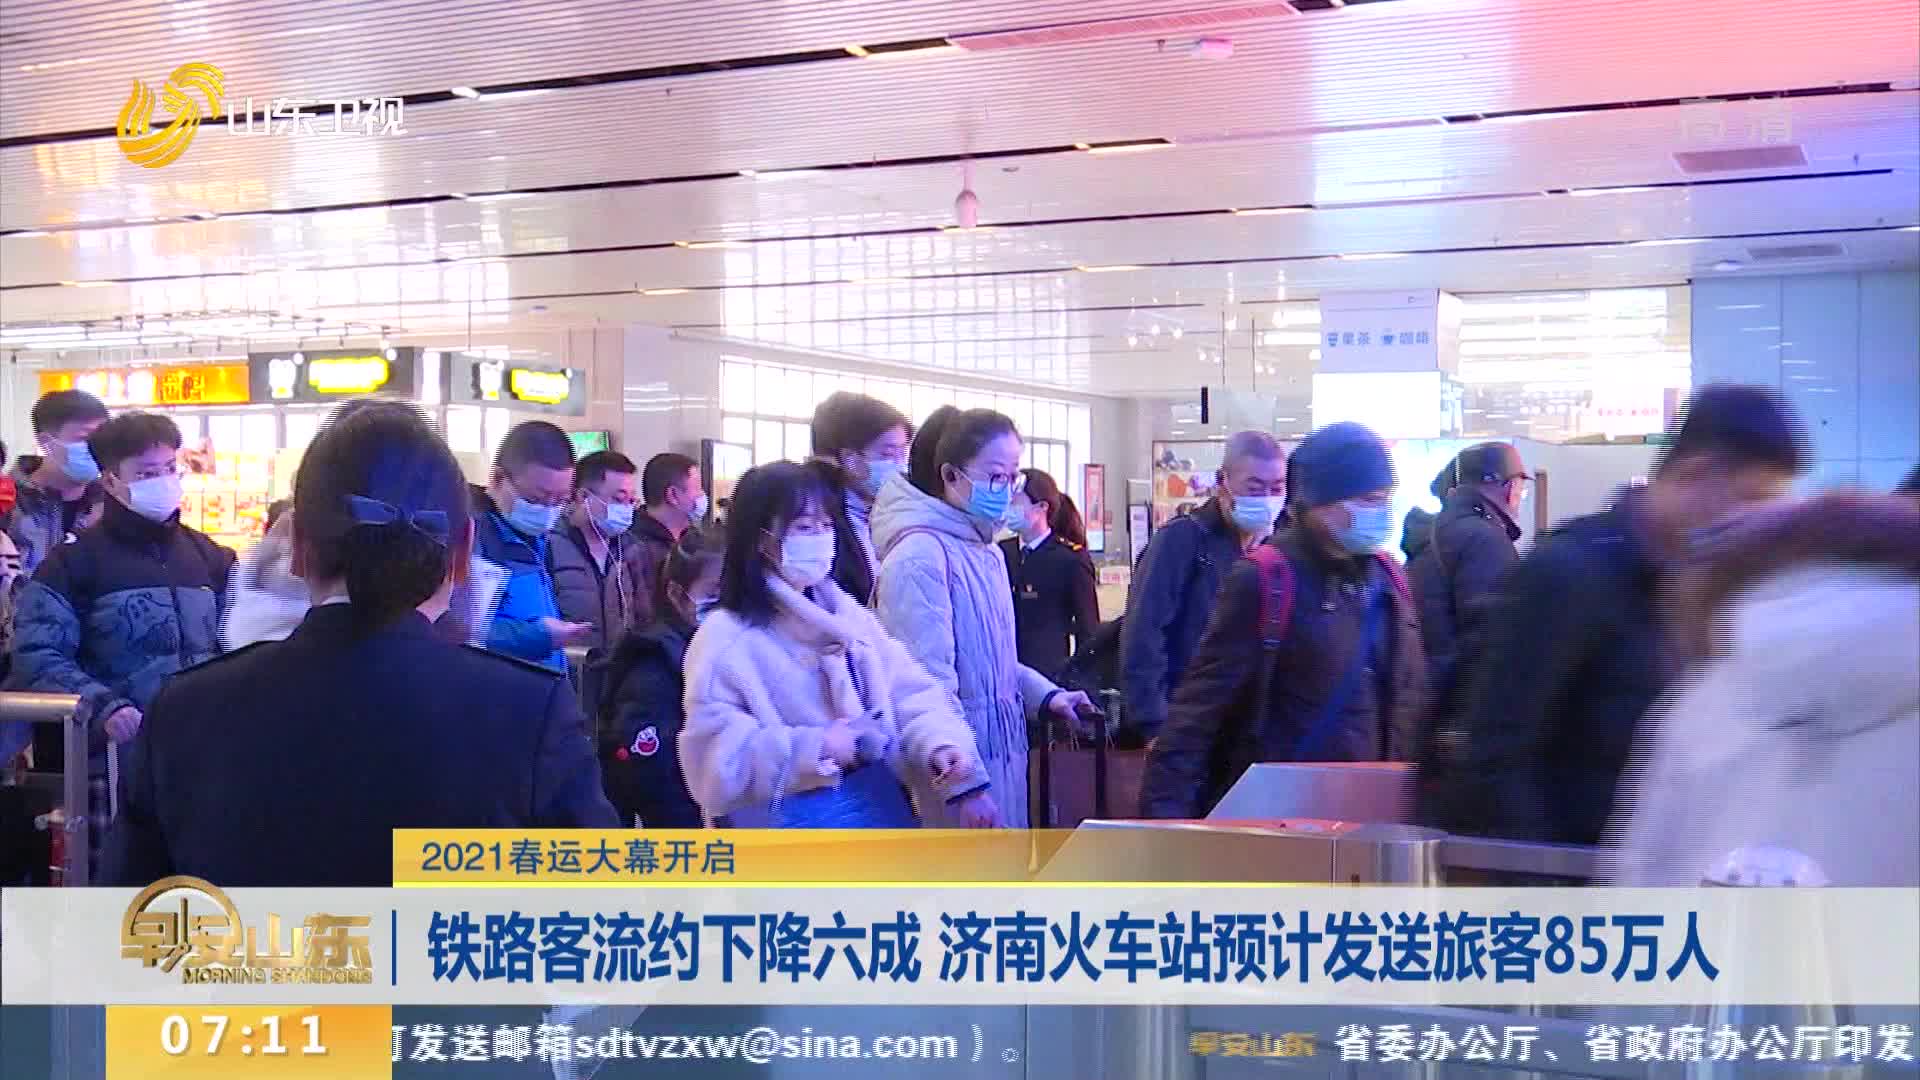 铁路客流约下降六成 济南火车站预计发送旅客85万人